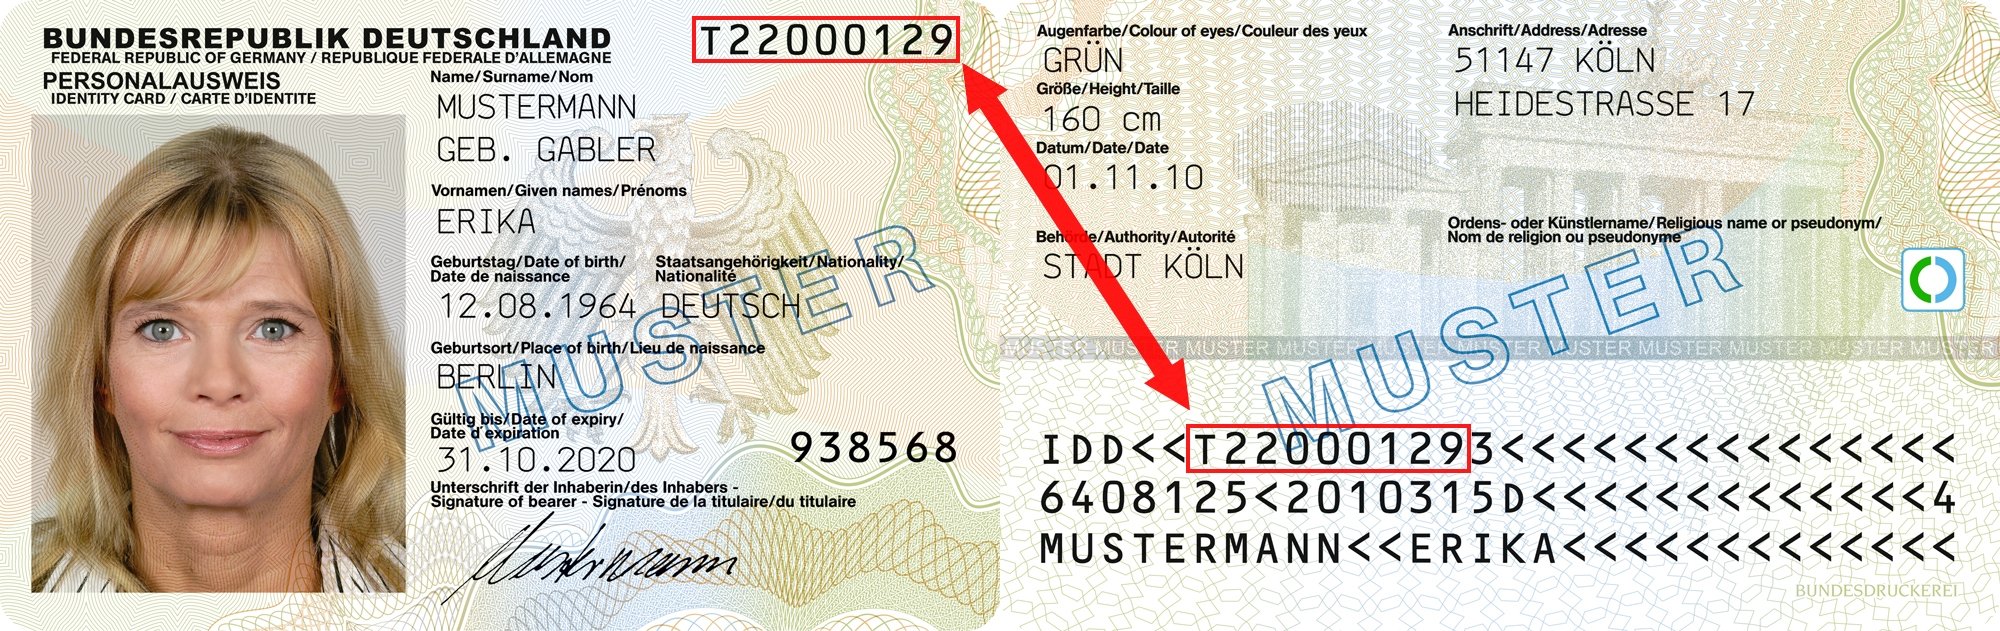 Dokumentennummer Personalausweis Wo Steht Die Personalausweisnummer 